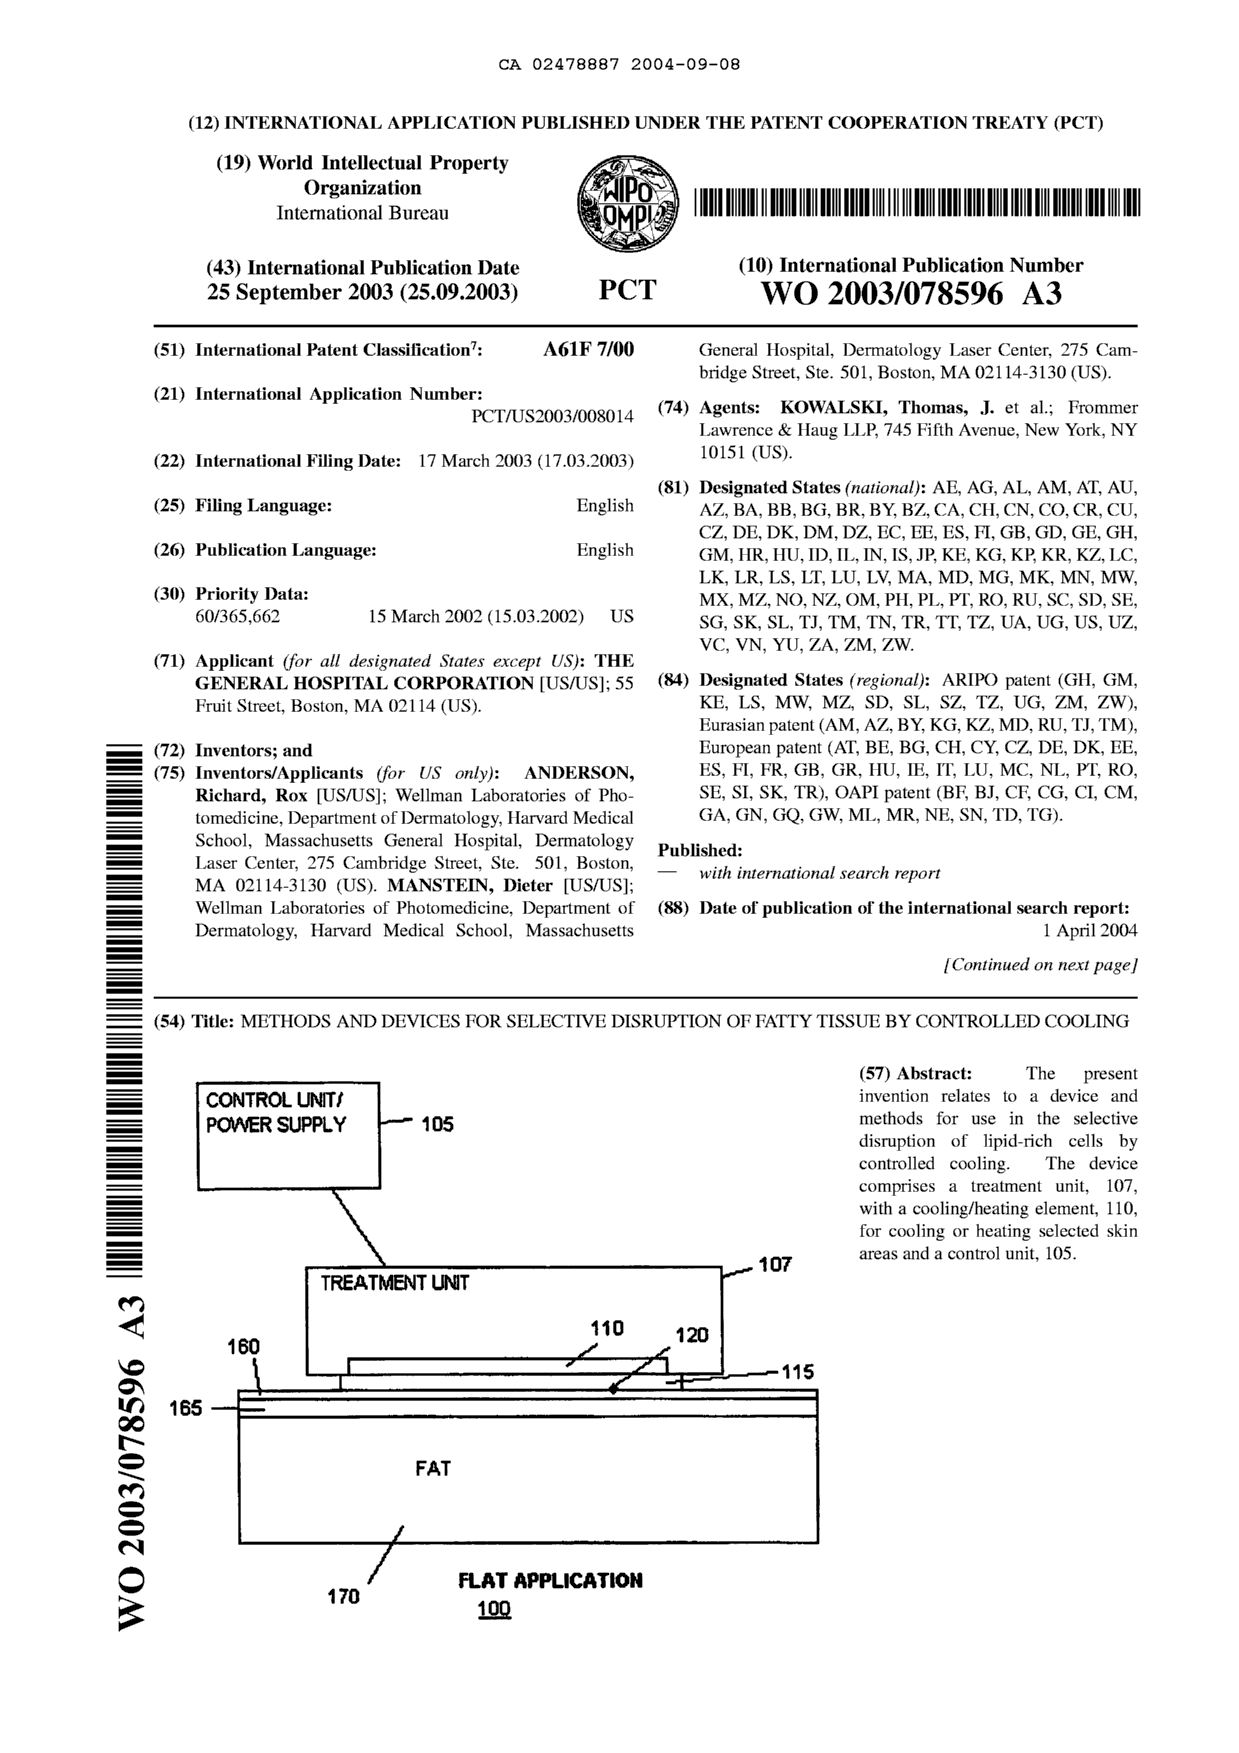 Document de brevet canadien 2478887. Abrégé 20031208. Image 1 de 2